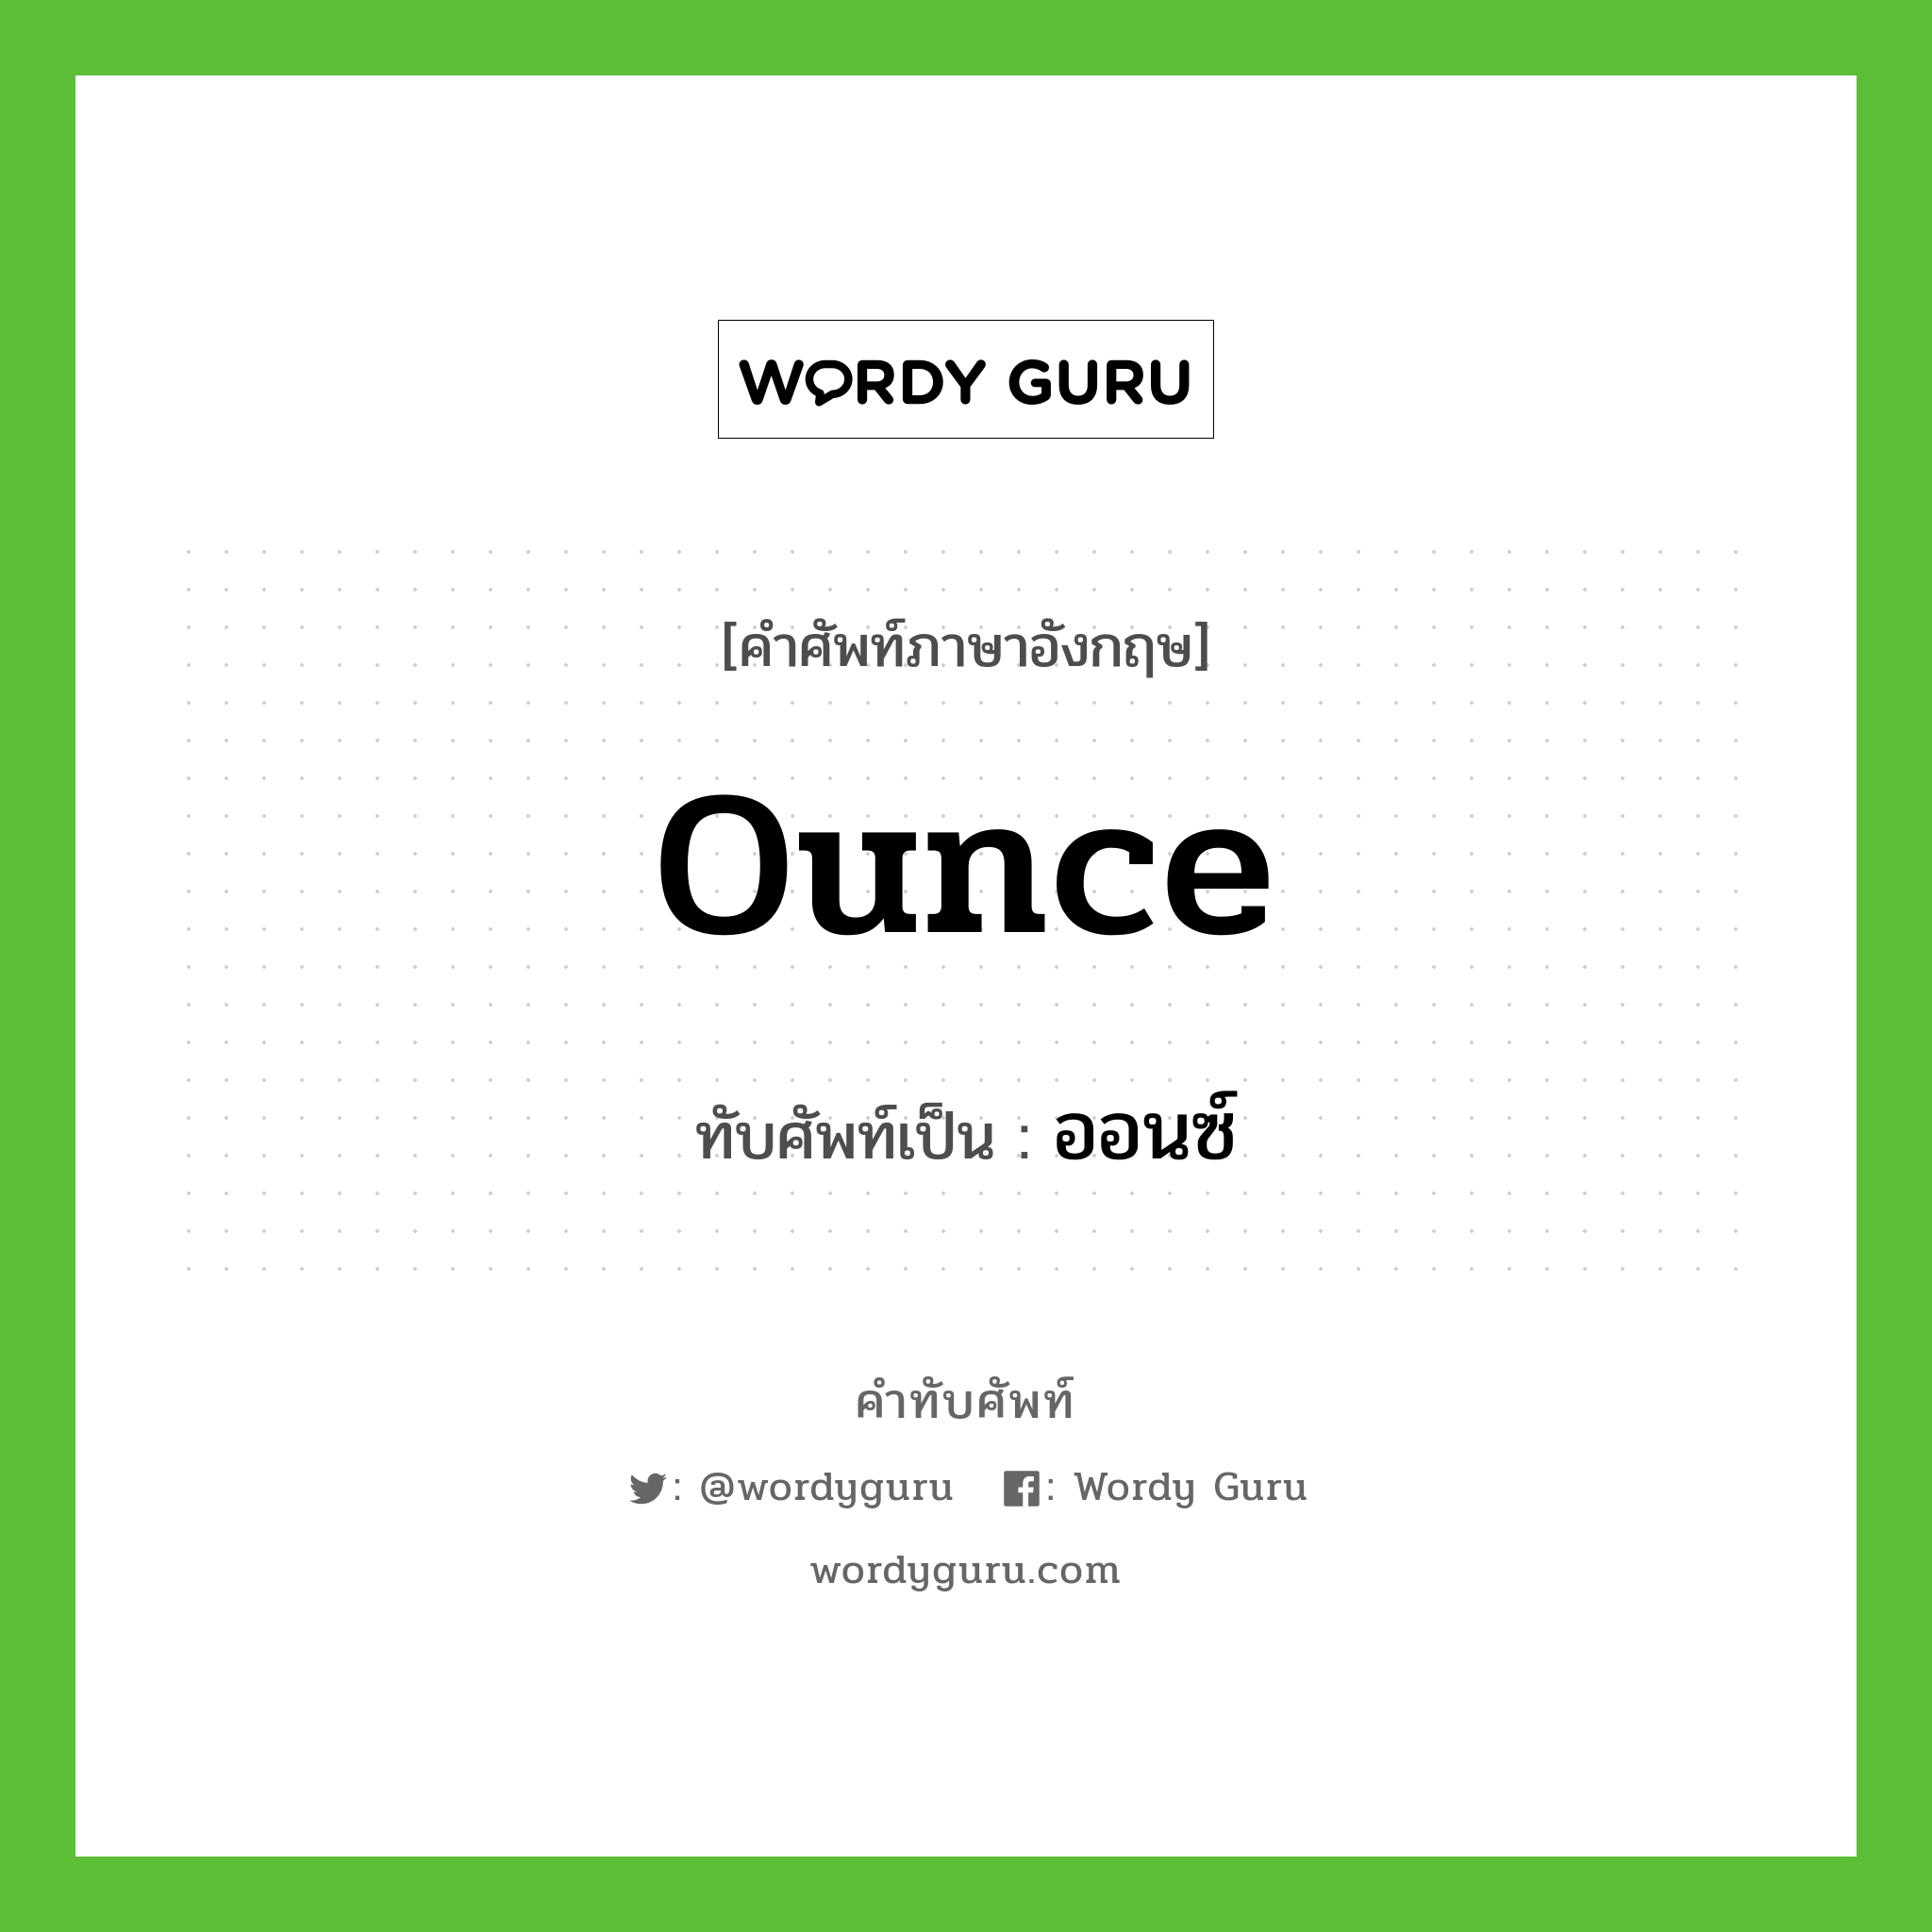 ounce เขียนเป็นคำไทยว่าอะไร?, คำศัพท์ภาษาอังกฤษ ounce ทับศัพท์เป็น ออนซ์